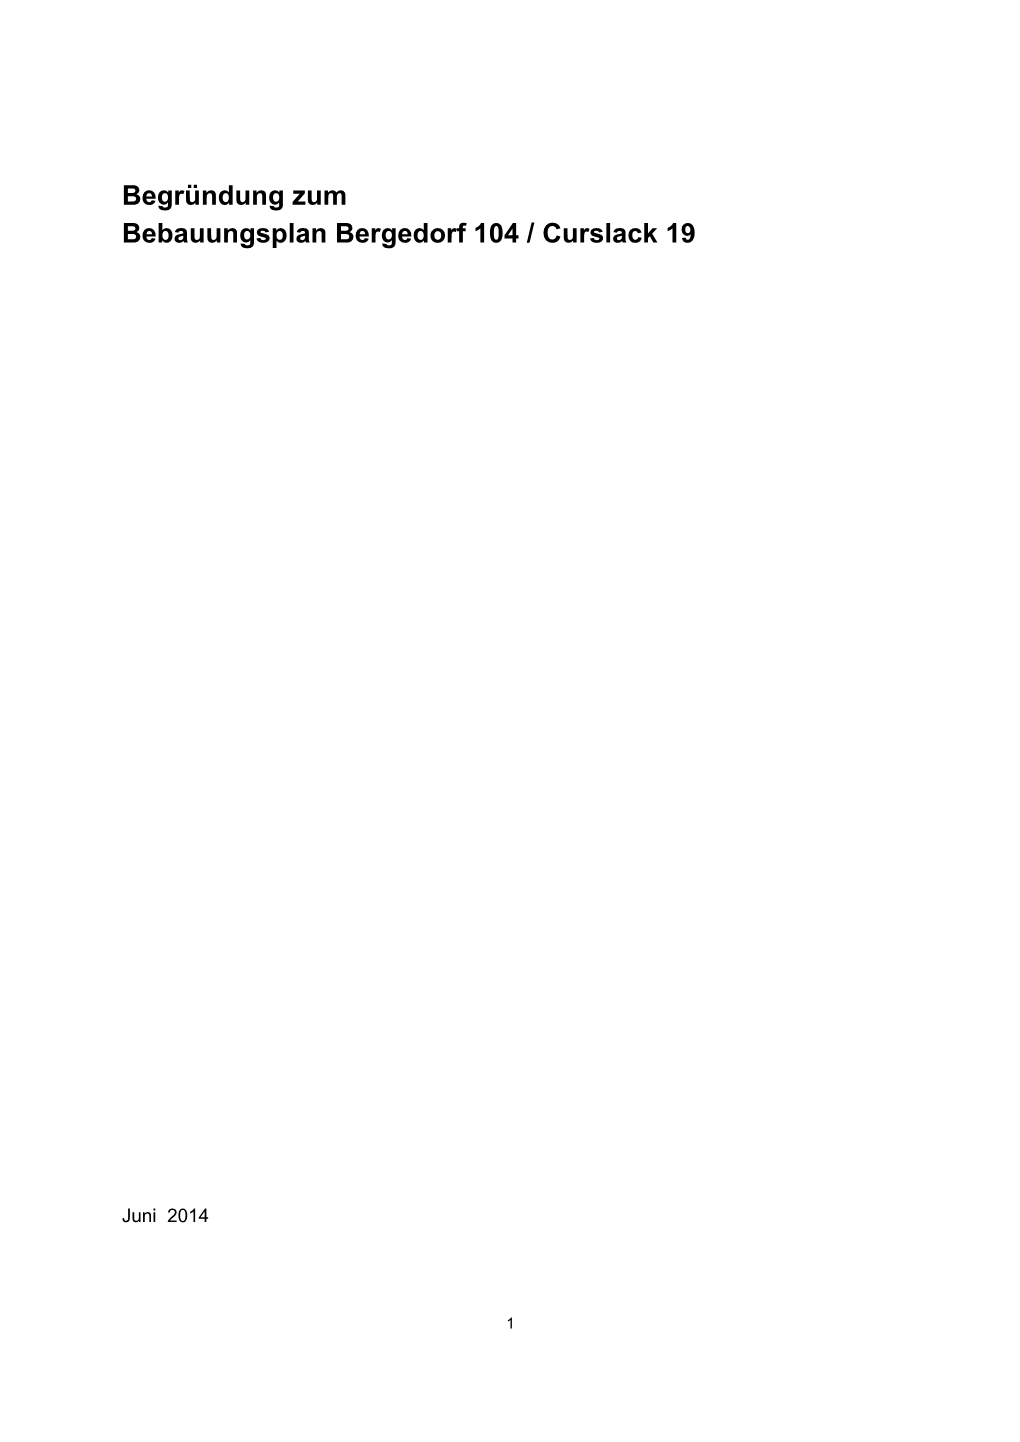 Begründung Zum Bebauungsplan Bergedorf 104 / Curslack 19